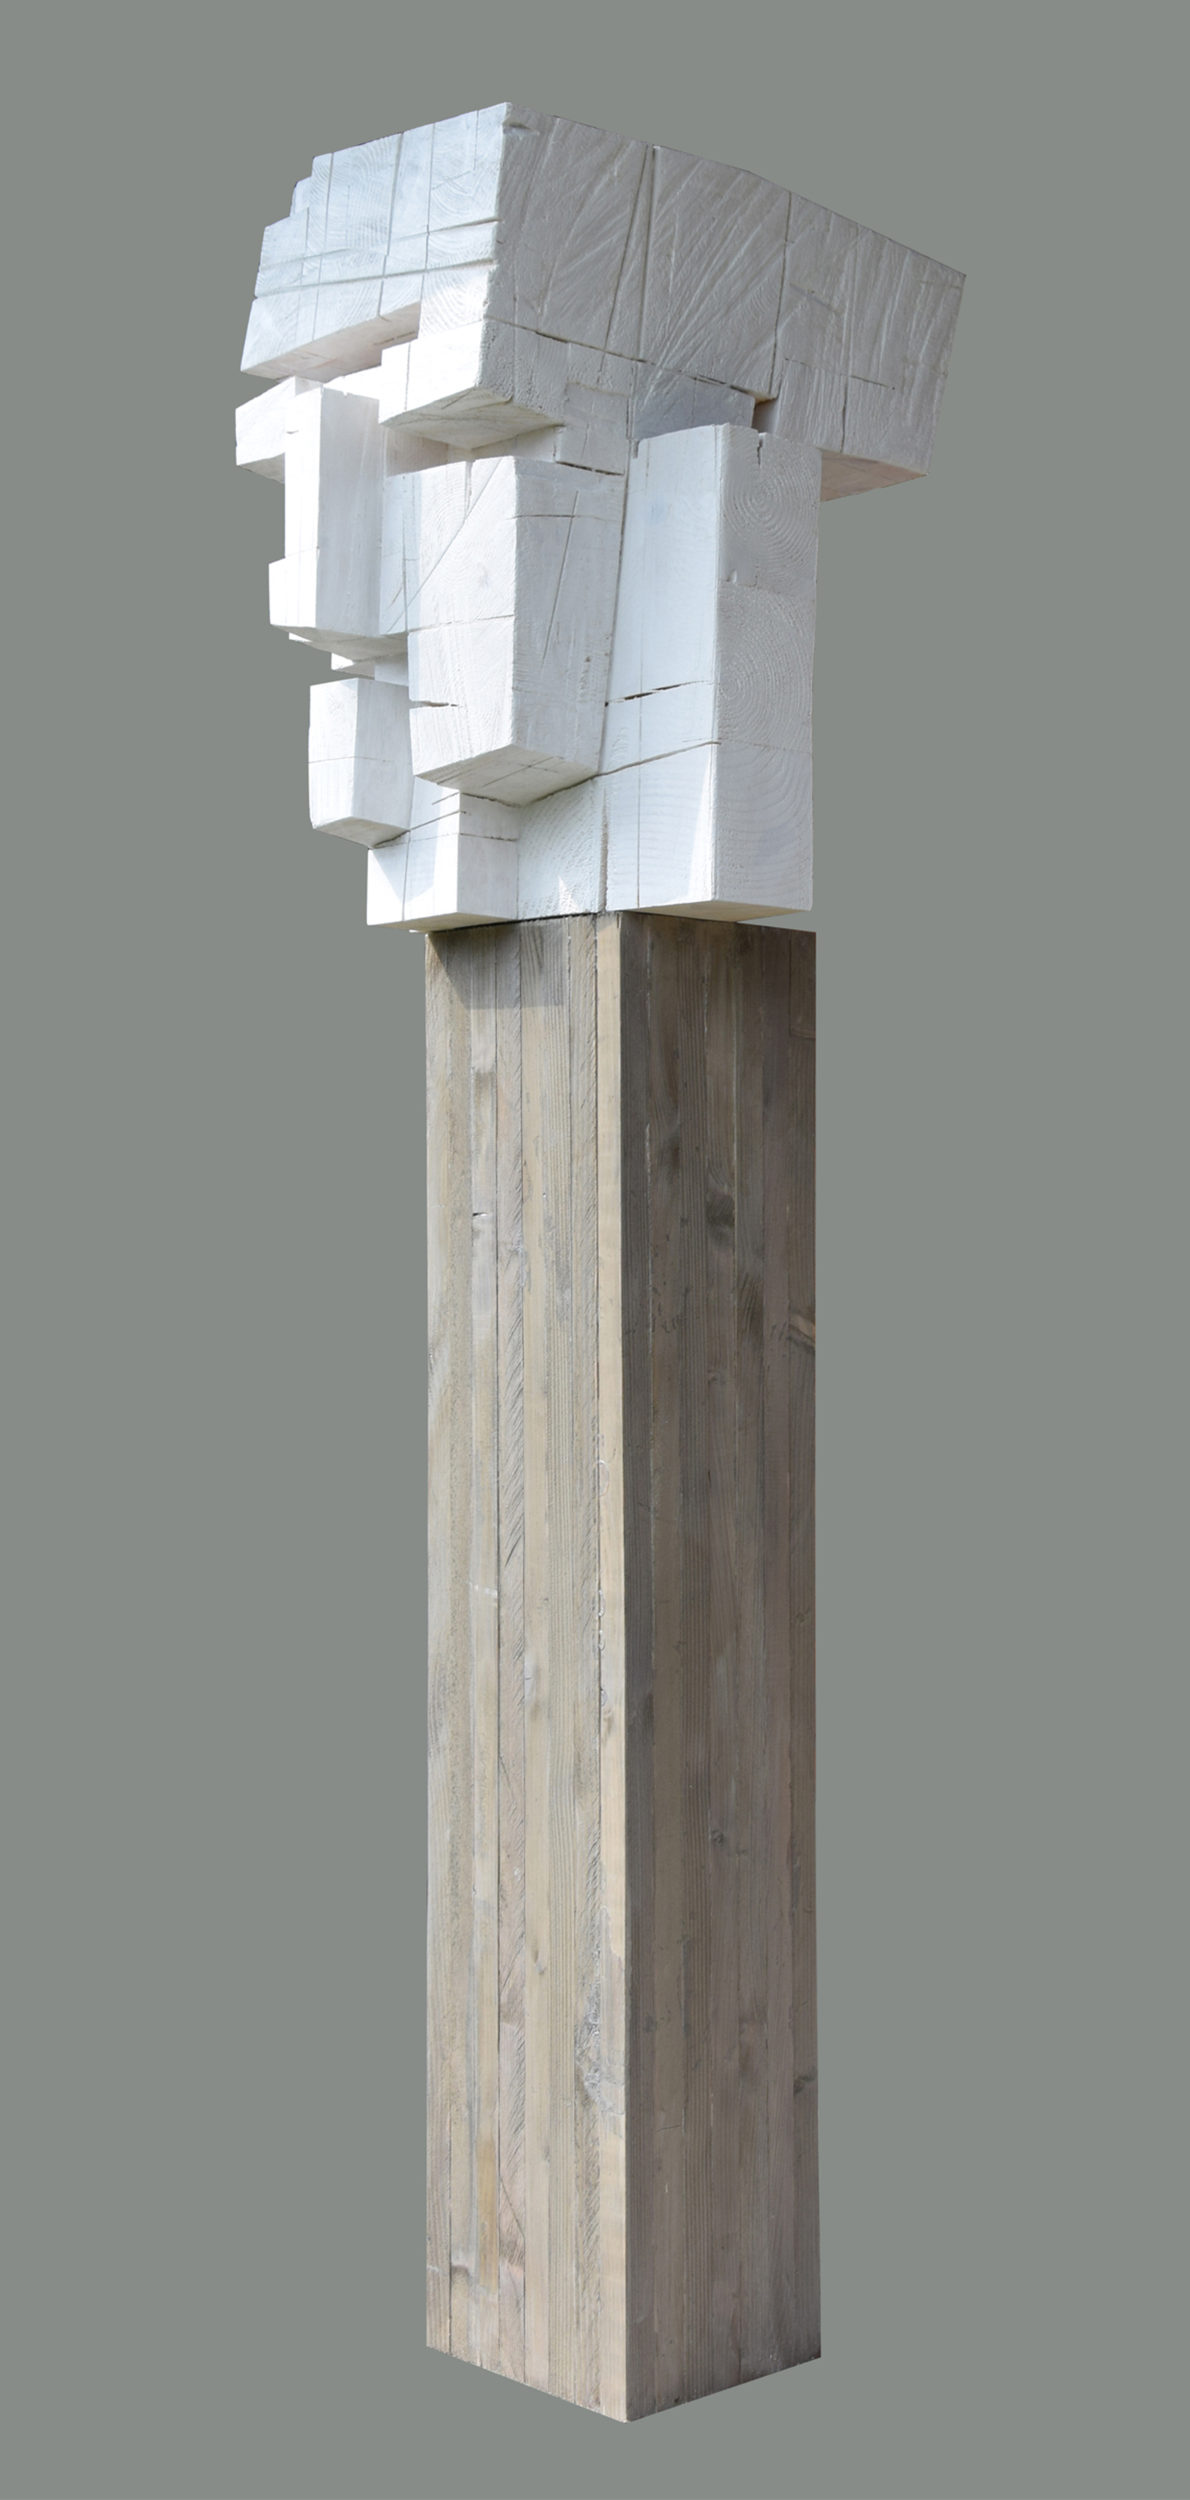 Głowa architekta z cyklu "Studium głowy", drewno klejone, patynowane, 170 x 45 x 50 cm